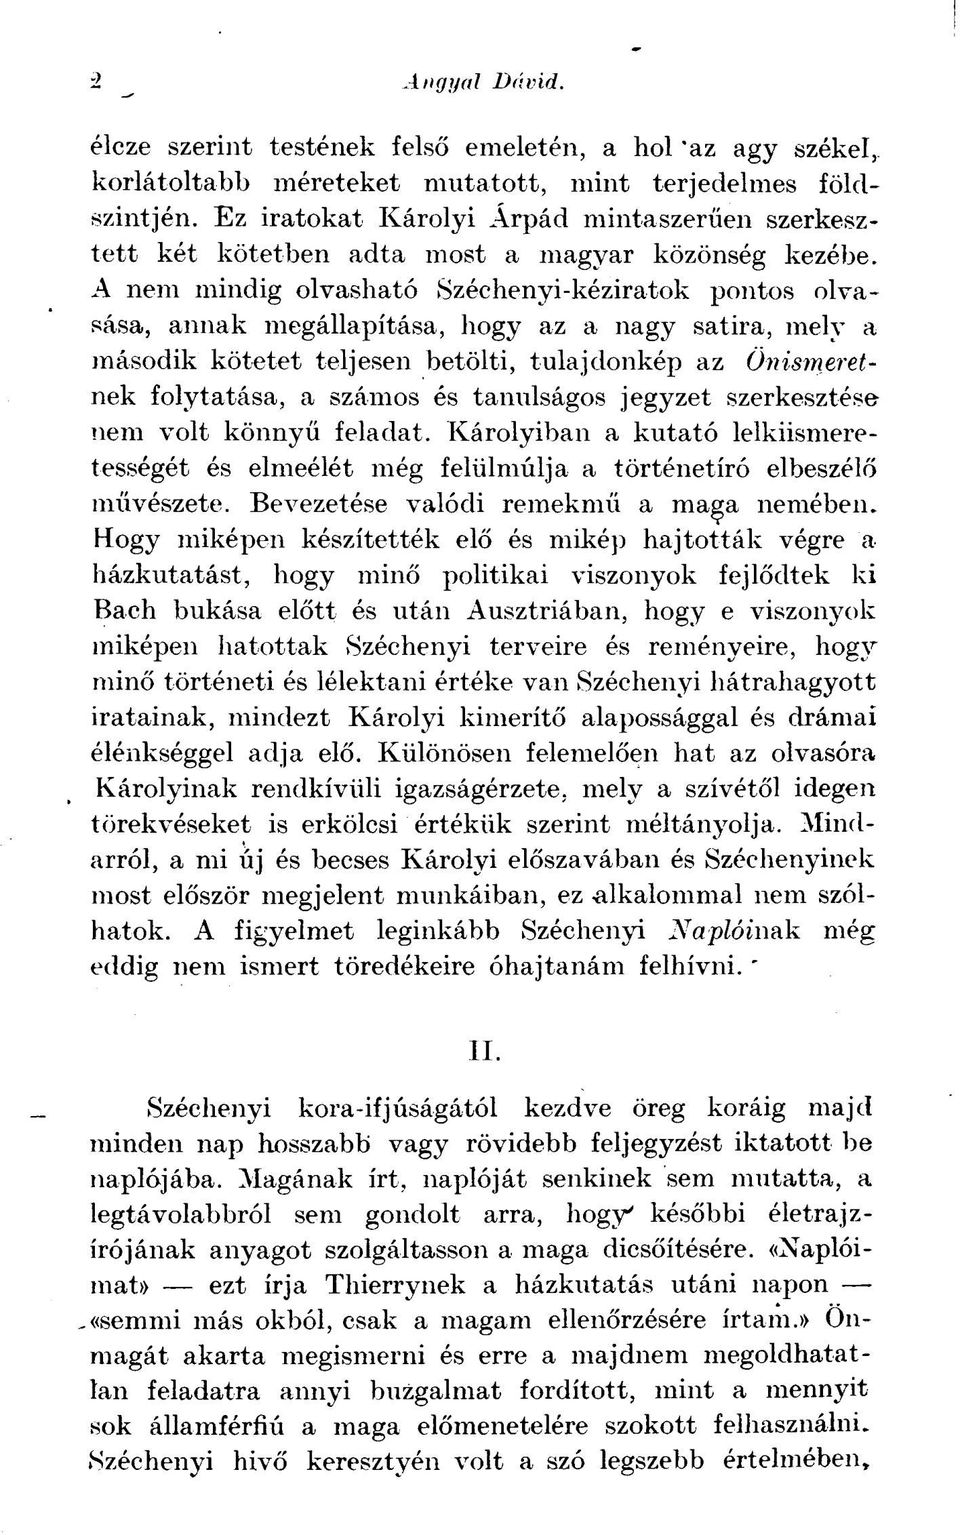 A nem mindig olvasható Széchenyi-kéziratok pontos olvasása, annak megállapítása, hogy az a nagy satira, mely a második kötetet teljesen betölti, tulajdonkép az Önismeretnek folytatása, a számos és